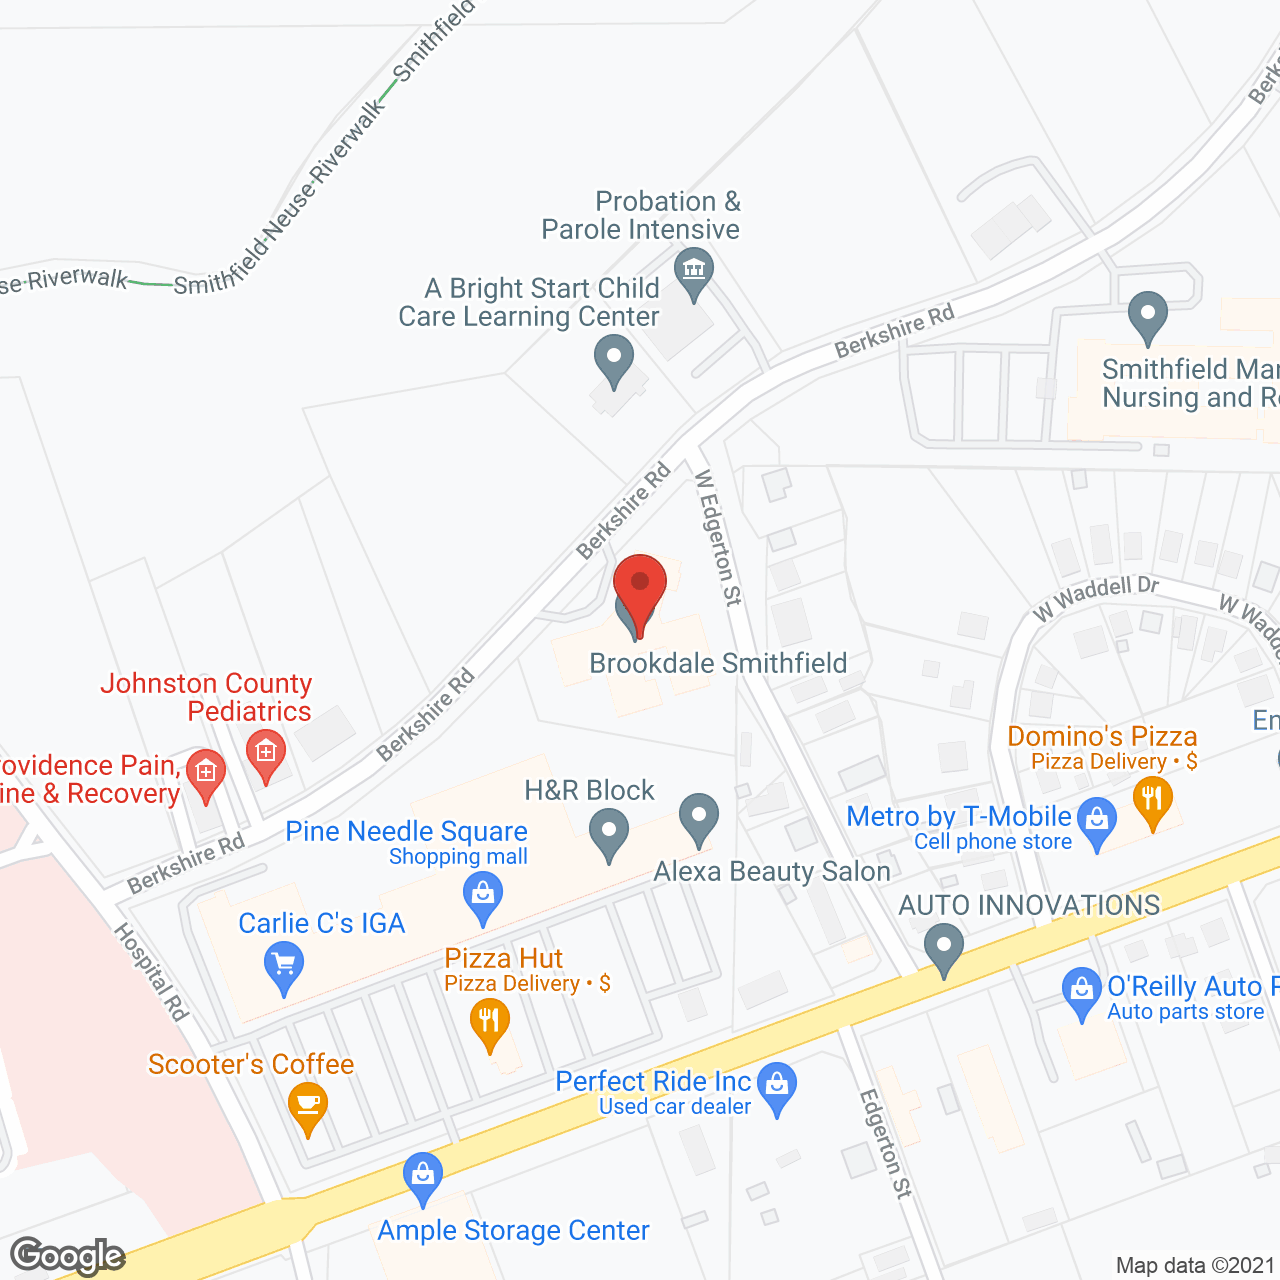 Brookdale Smithfield in google map